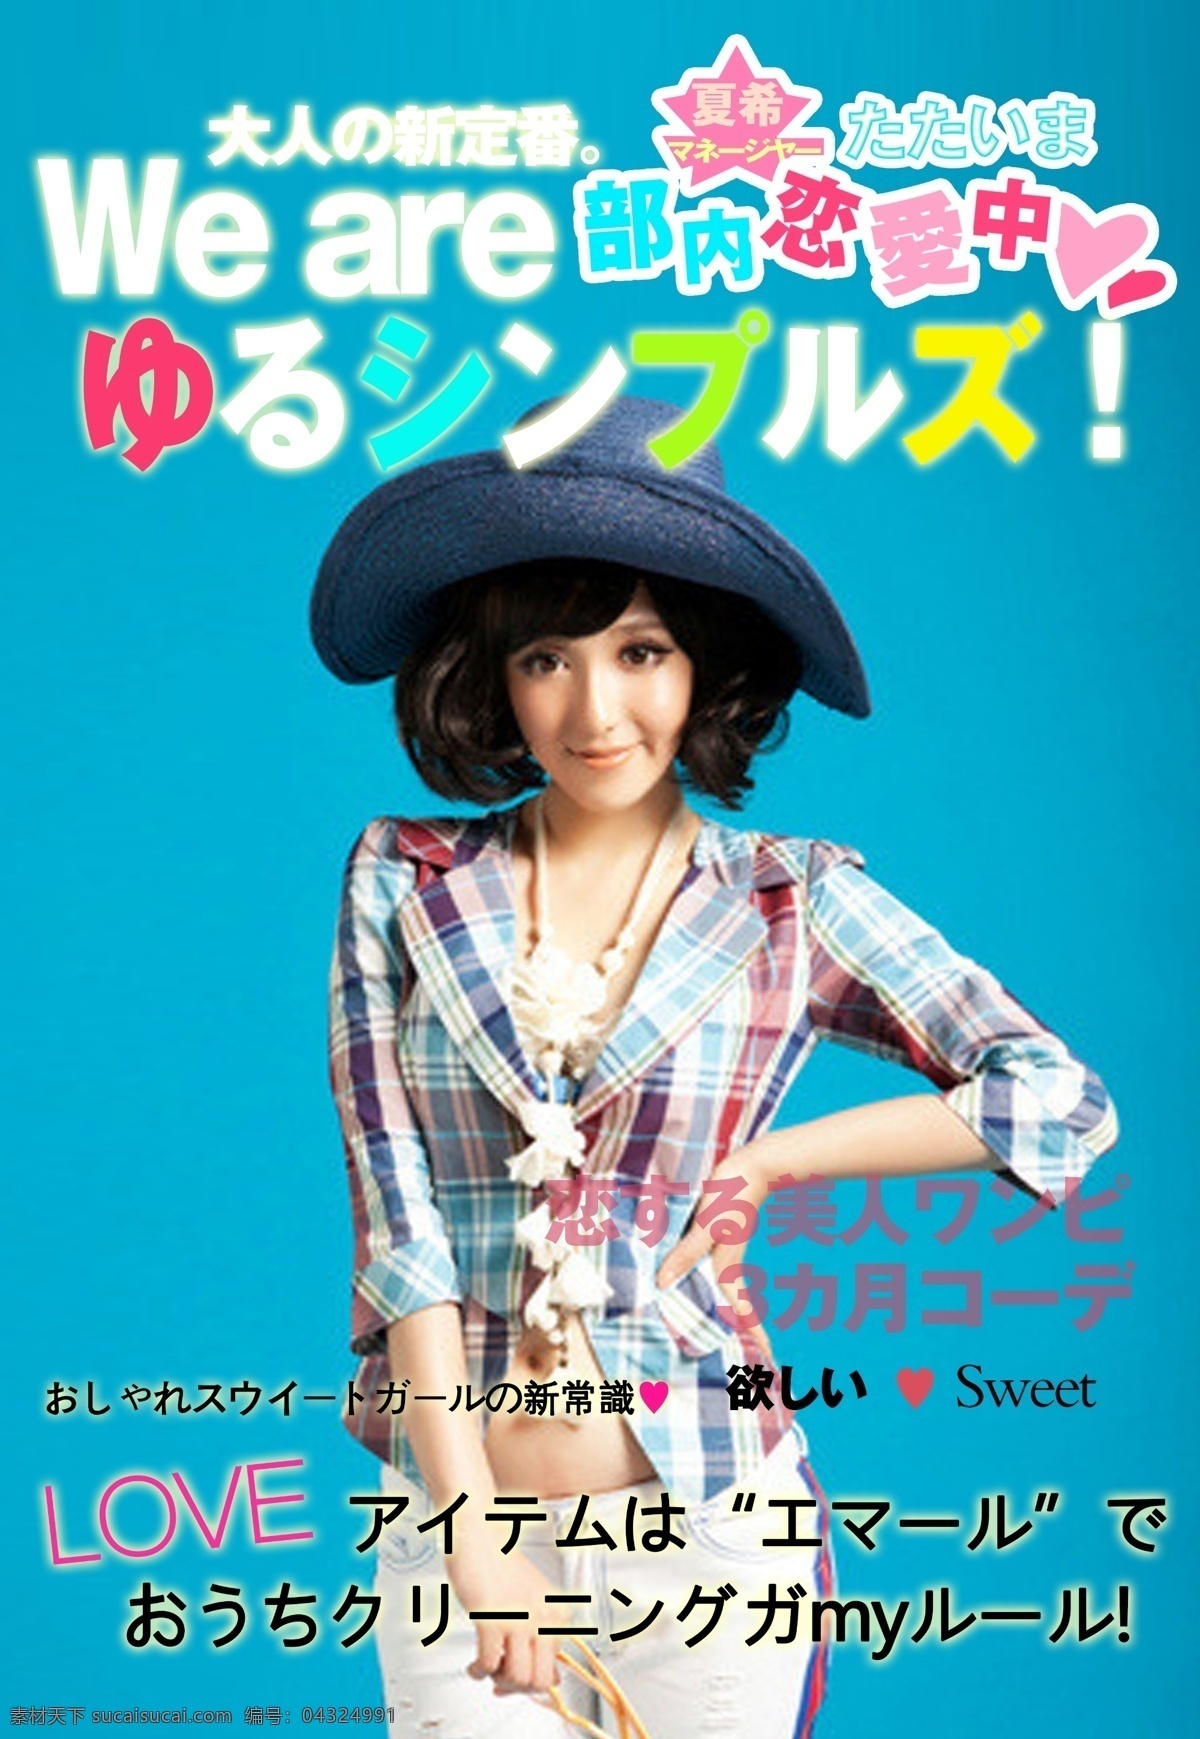 日 系 杂志 封面设计 美女 帽子 封面 日系 恋爱 爱情 爱情封面 青色 天蓝色